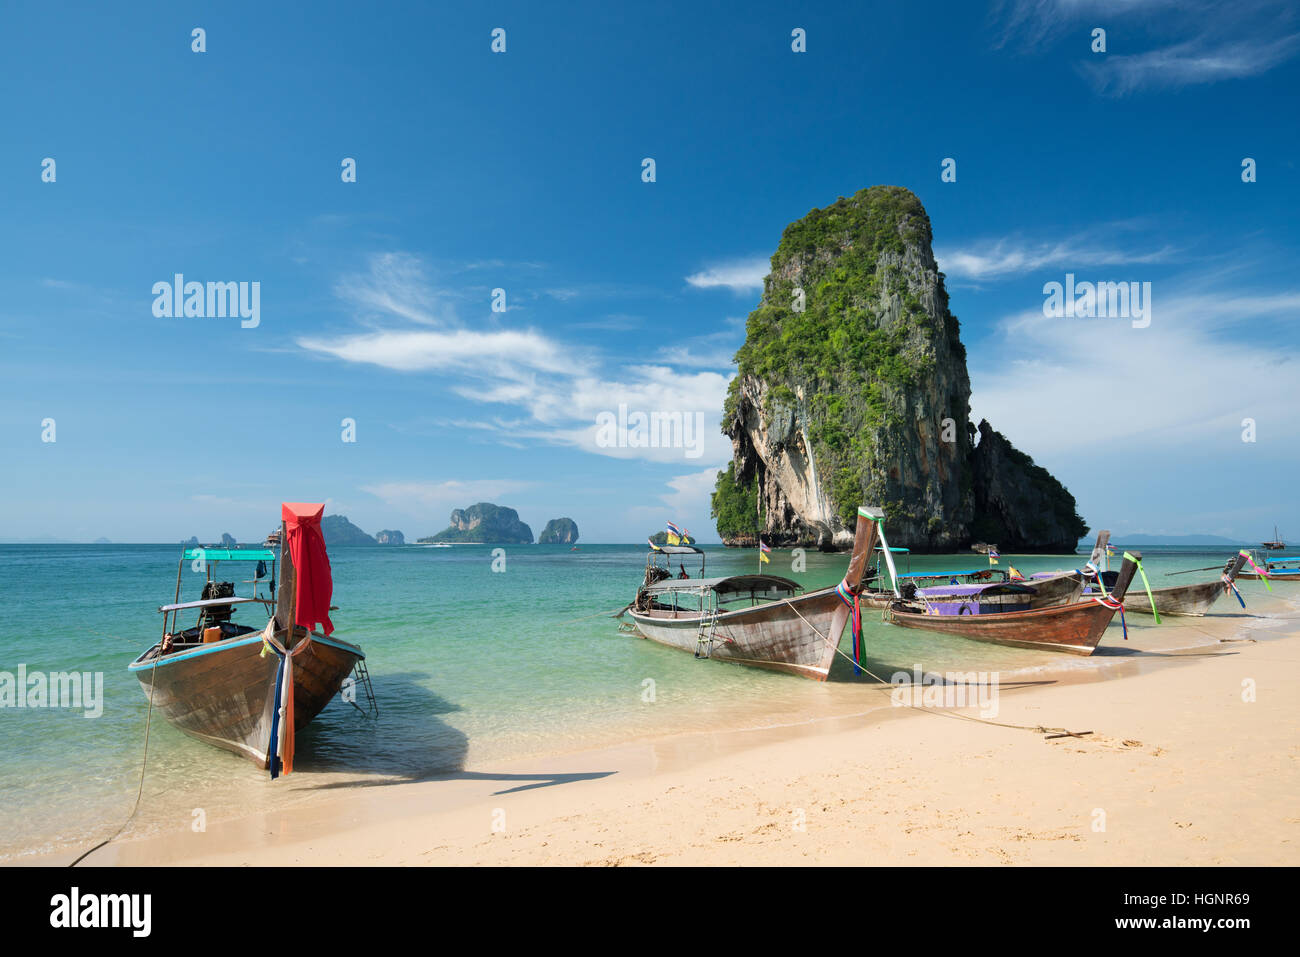 Des bateaux à longue queue colorés belle Ao Nang Beach sur un fond de ciel bleu et la mer d'azur et de roches calcaires, les îles Phi Phi, Thaïlande Banque D'Images